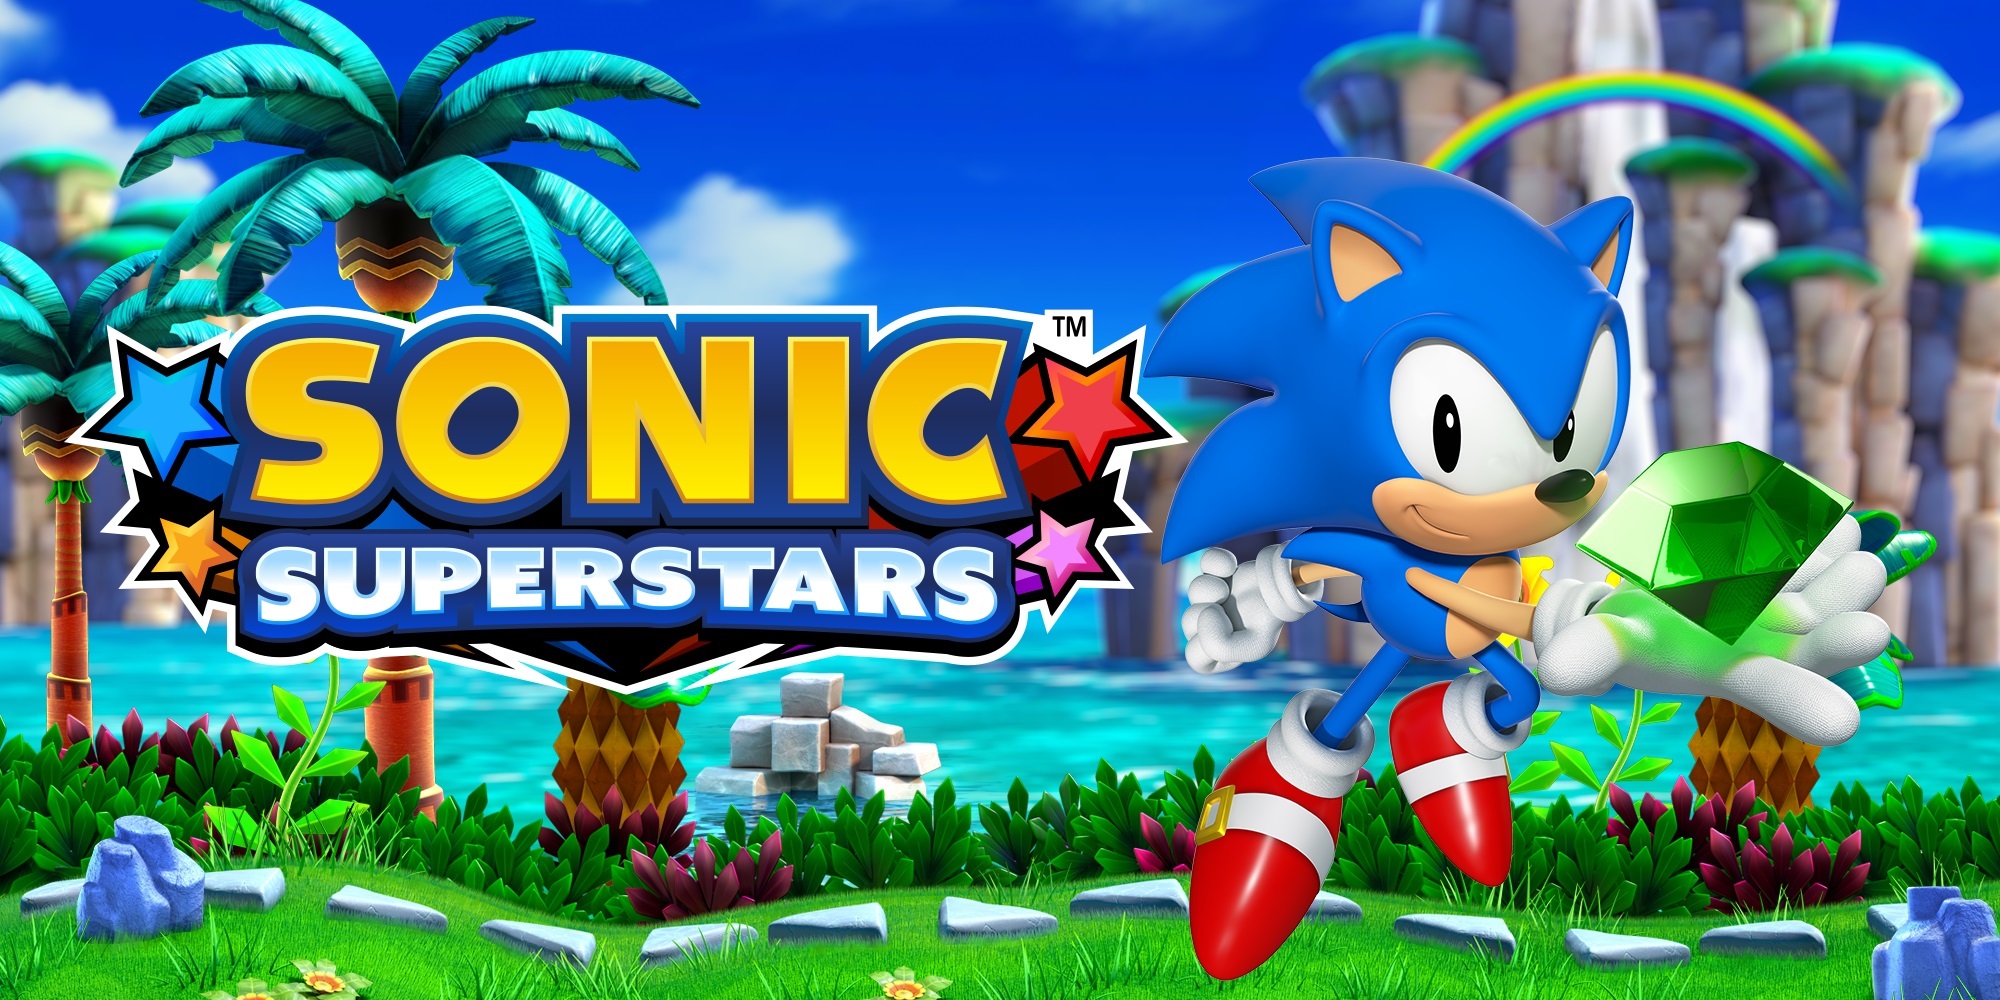 Launch-Trailer zu Sonic Superstars veröffentlicht Titel